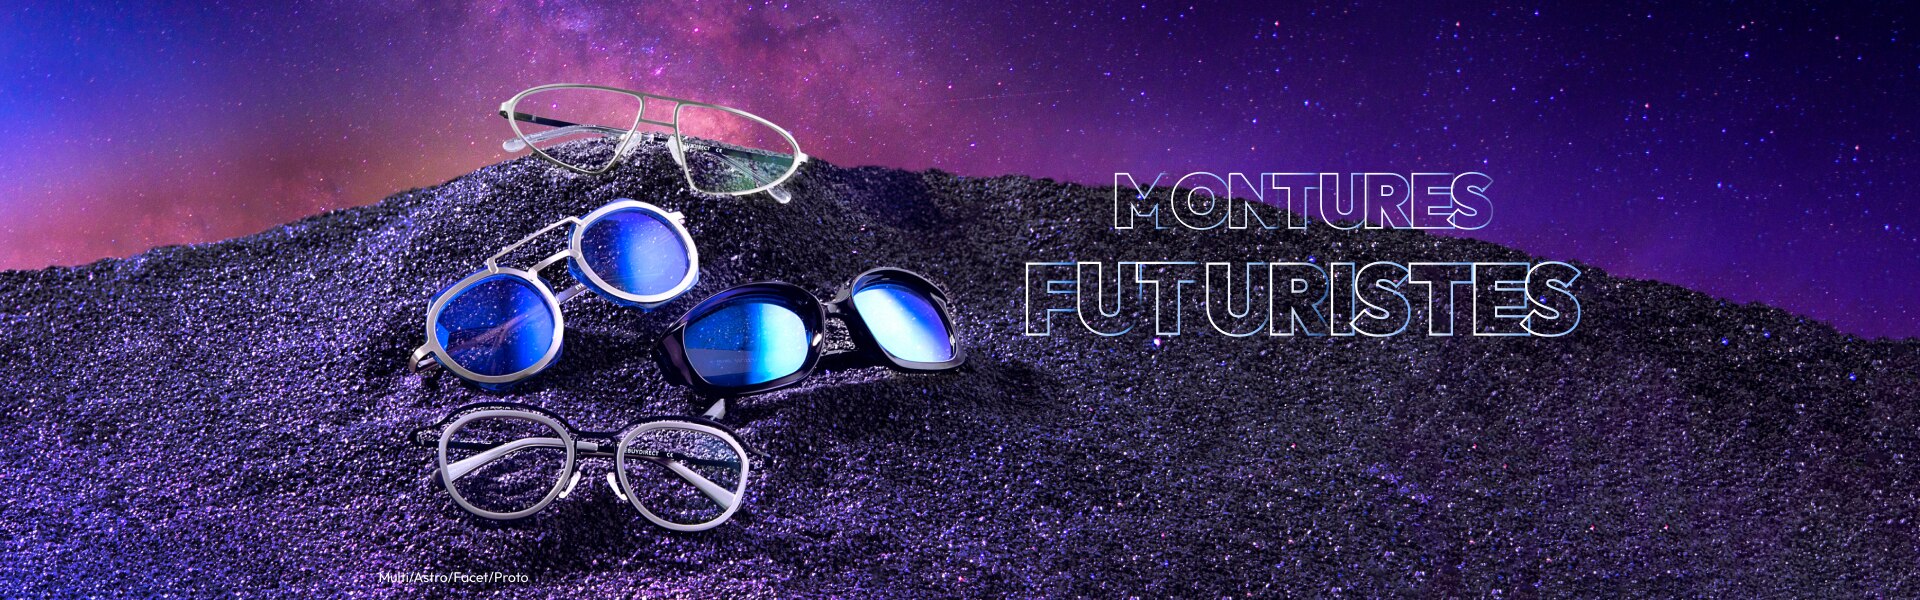 Une collection de lunettes mode, inspirées de l’espace et de la science-fiction.